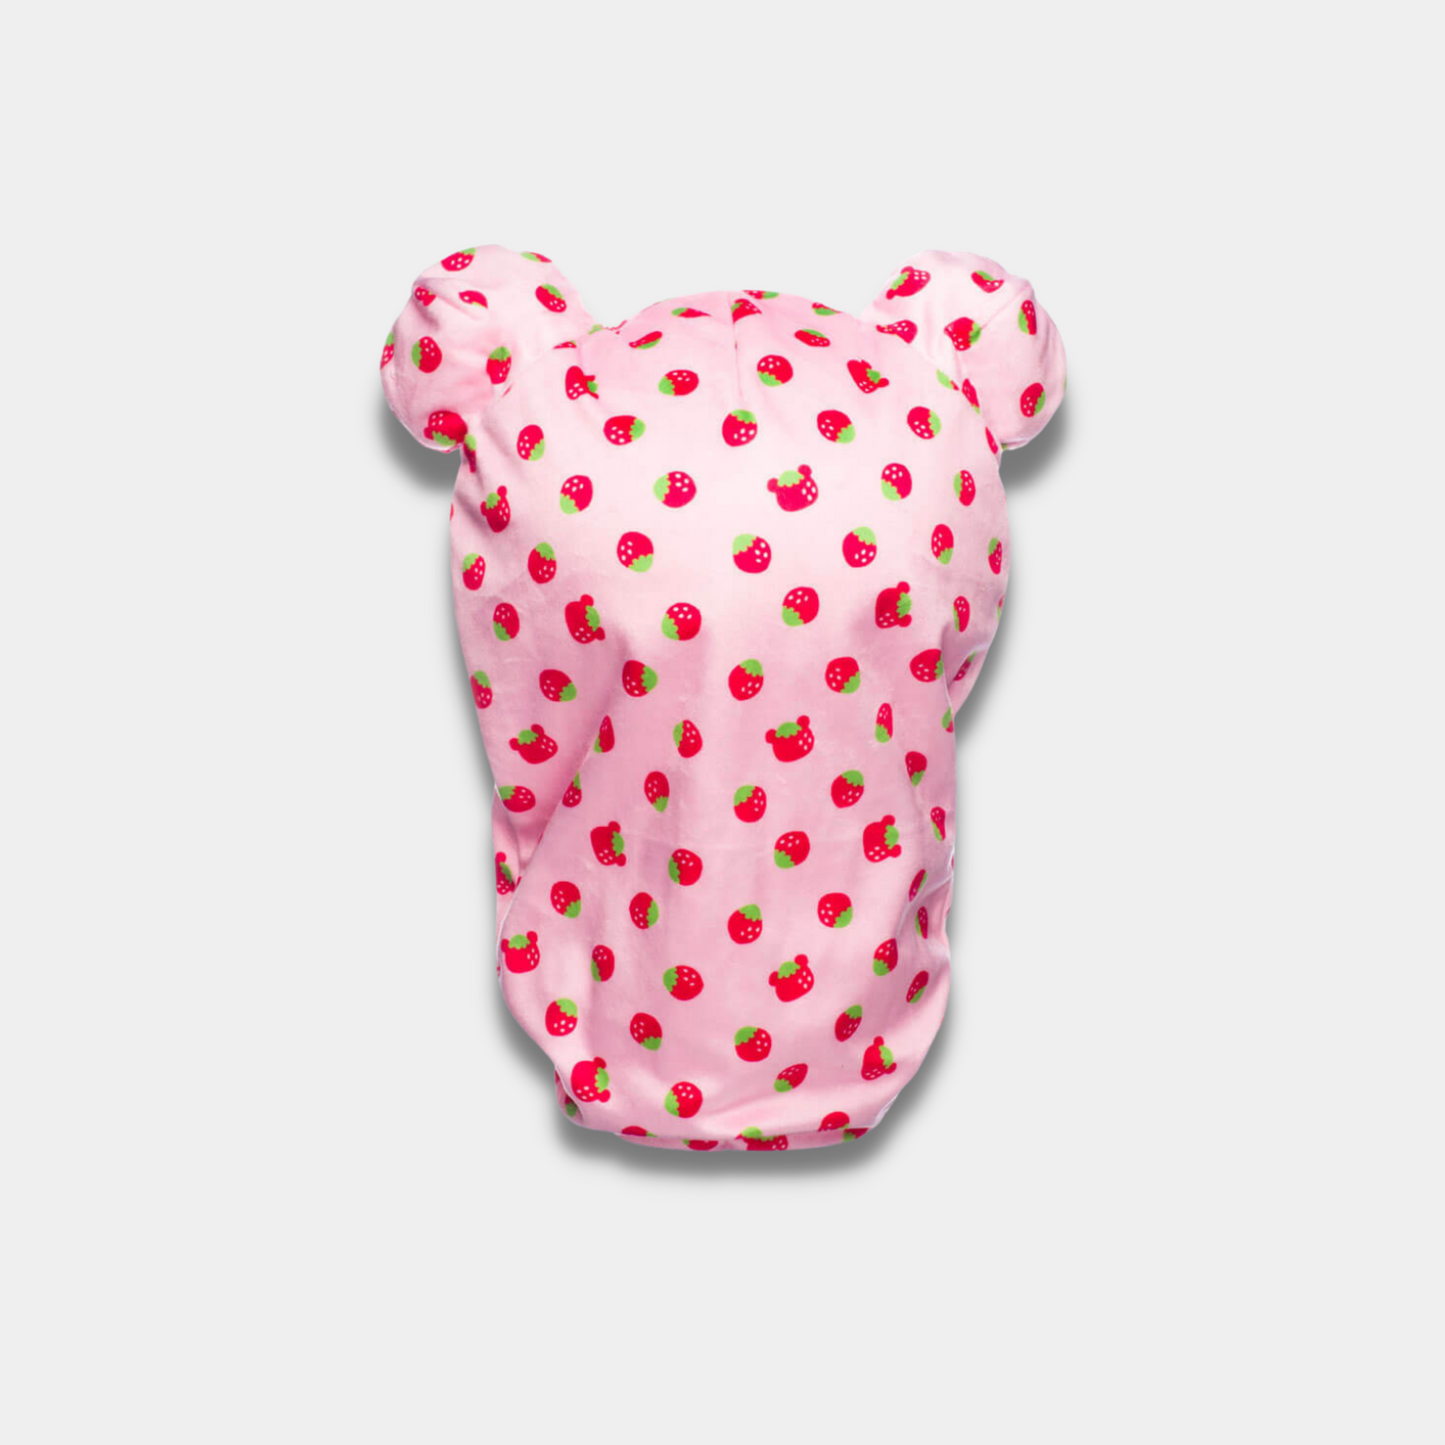 Korilakkuma Strawberry Pattern Pink Sleeping Bag Plush